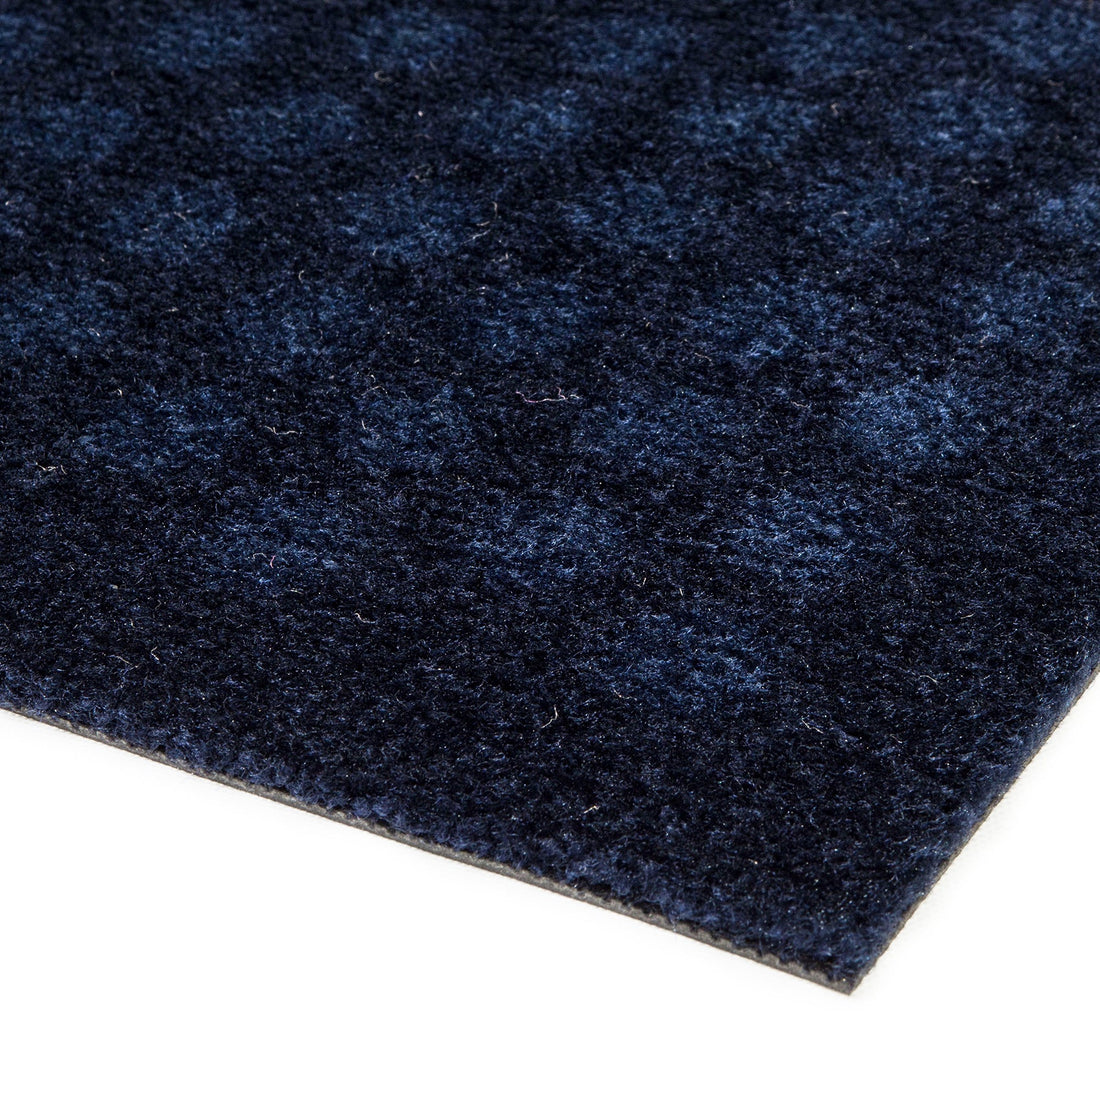 Bodenmatte 40 x 60 cm - Punkte/Blau